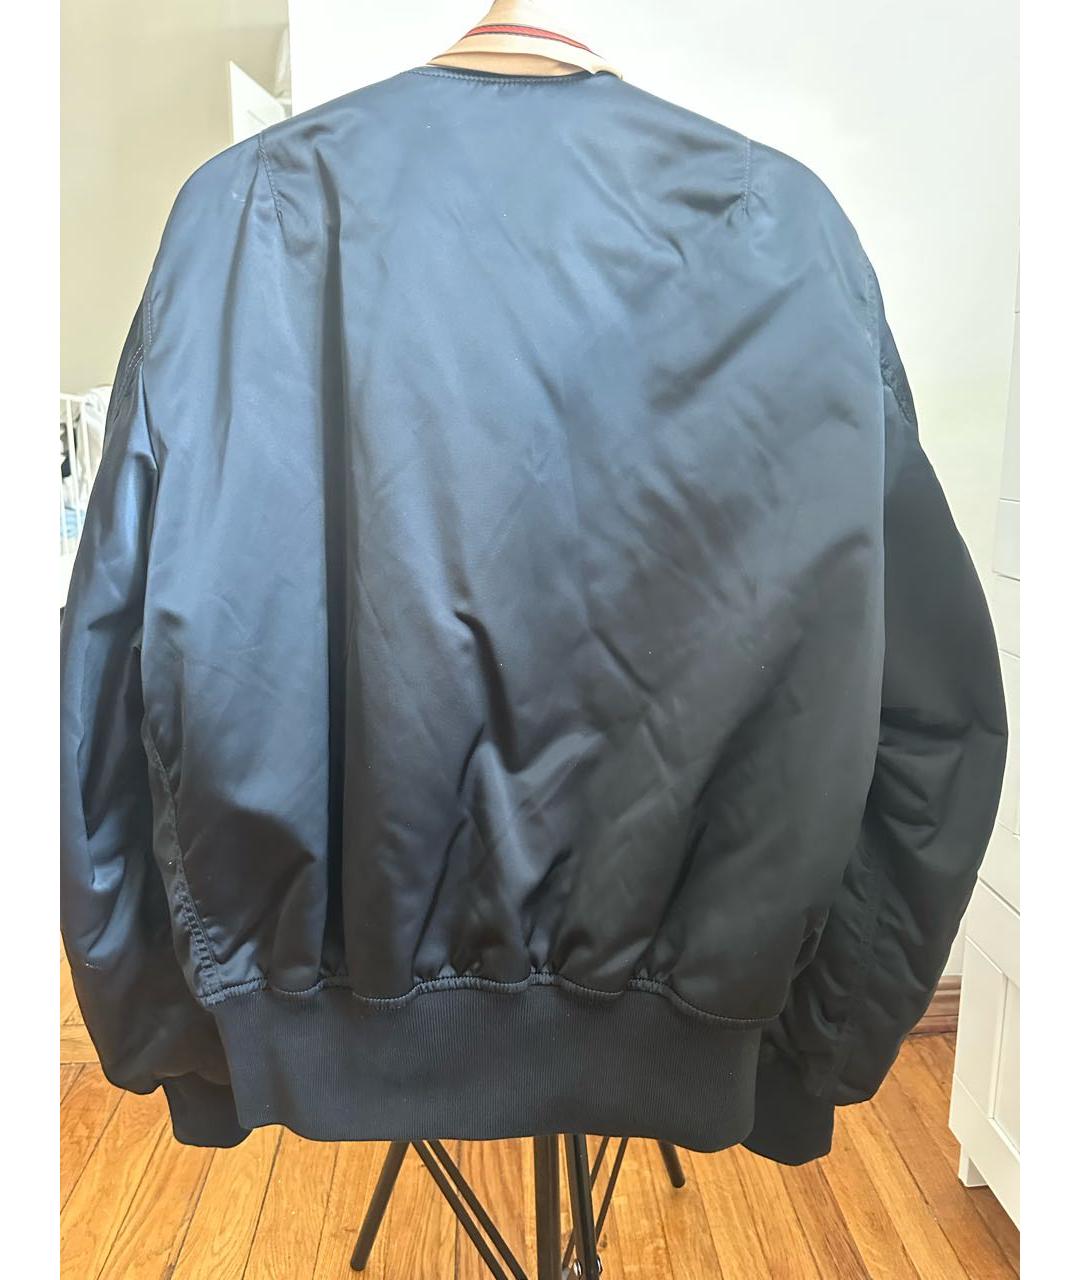 BALENCIAGA Черная полиамидовая куртка, фото 3